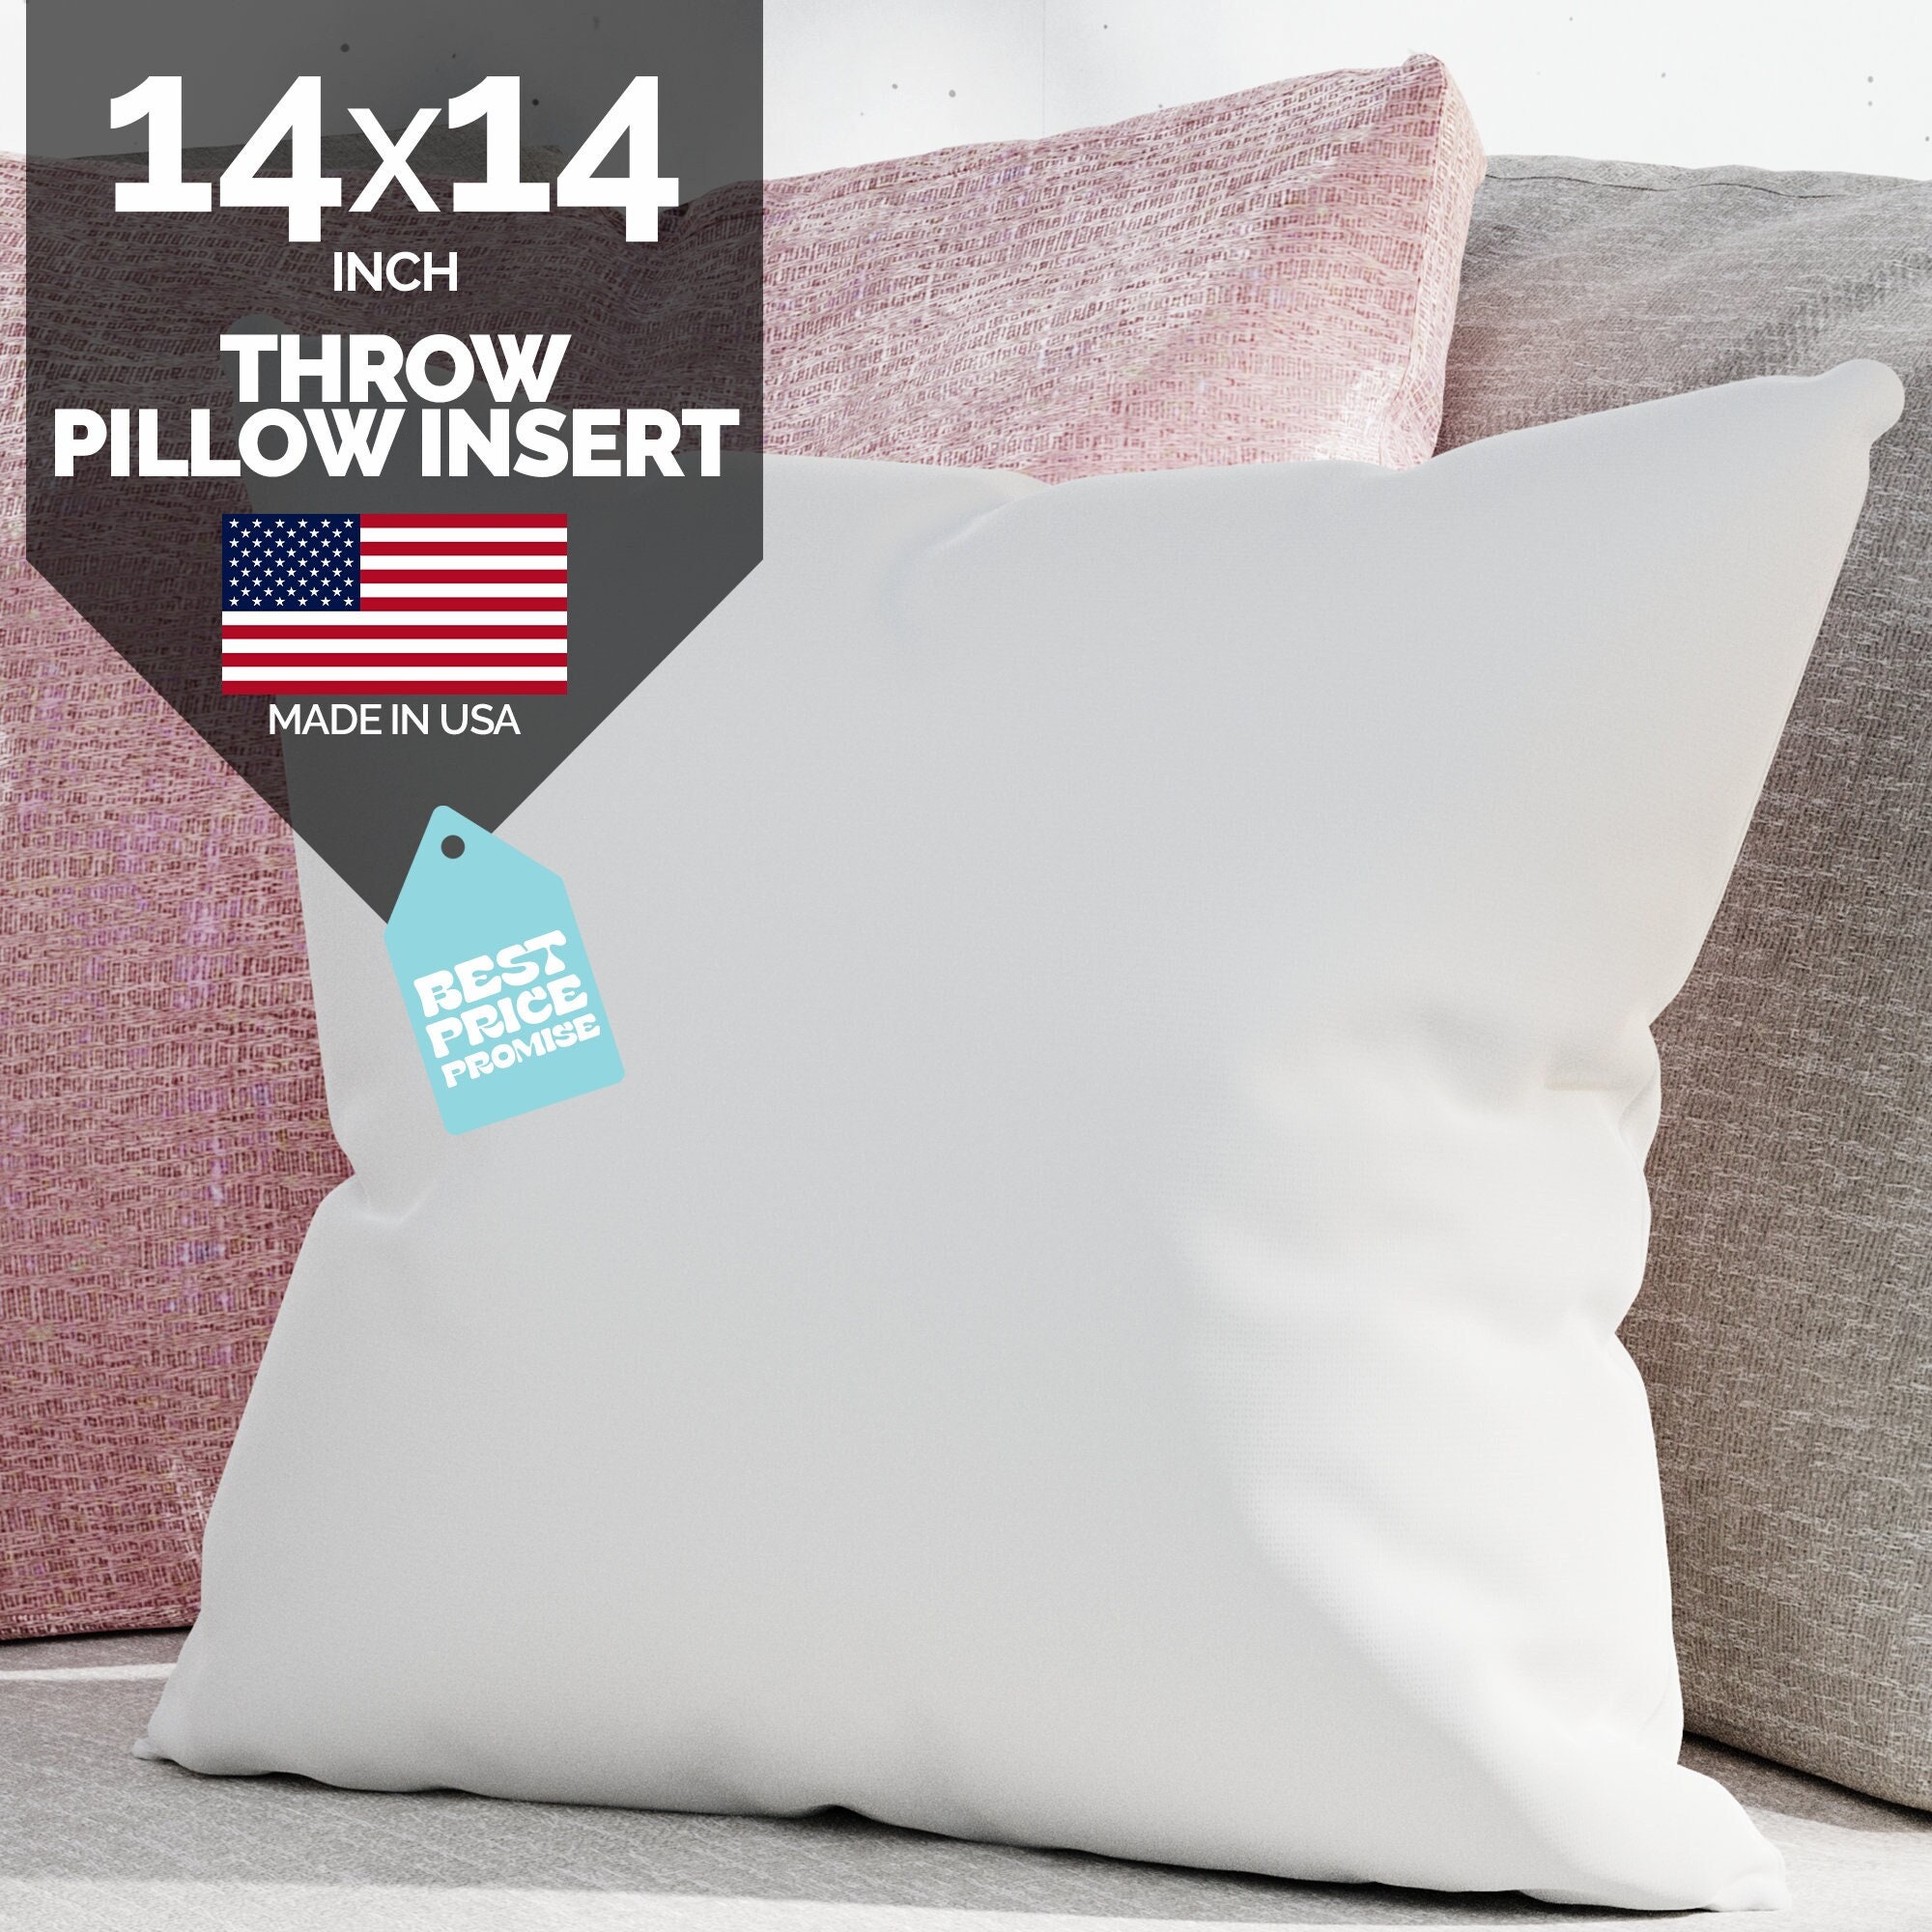 Square Pillow Inserts Mini Small 8x8, 9x9, 12x12, 14x14 Premium Polyfill  Inserts 